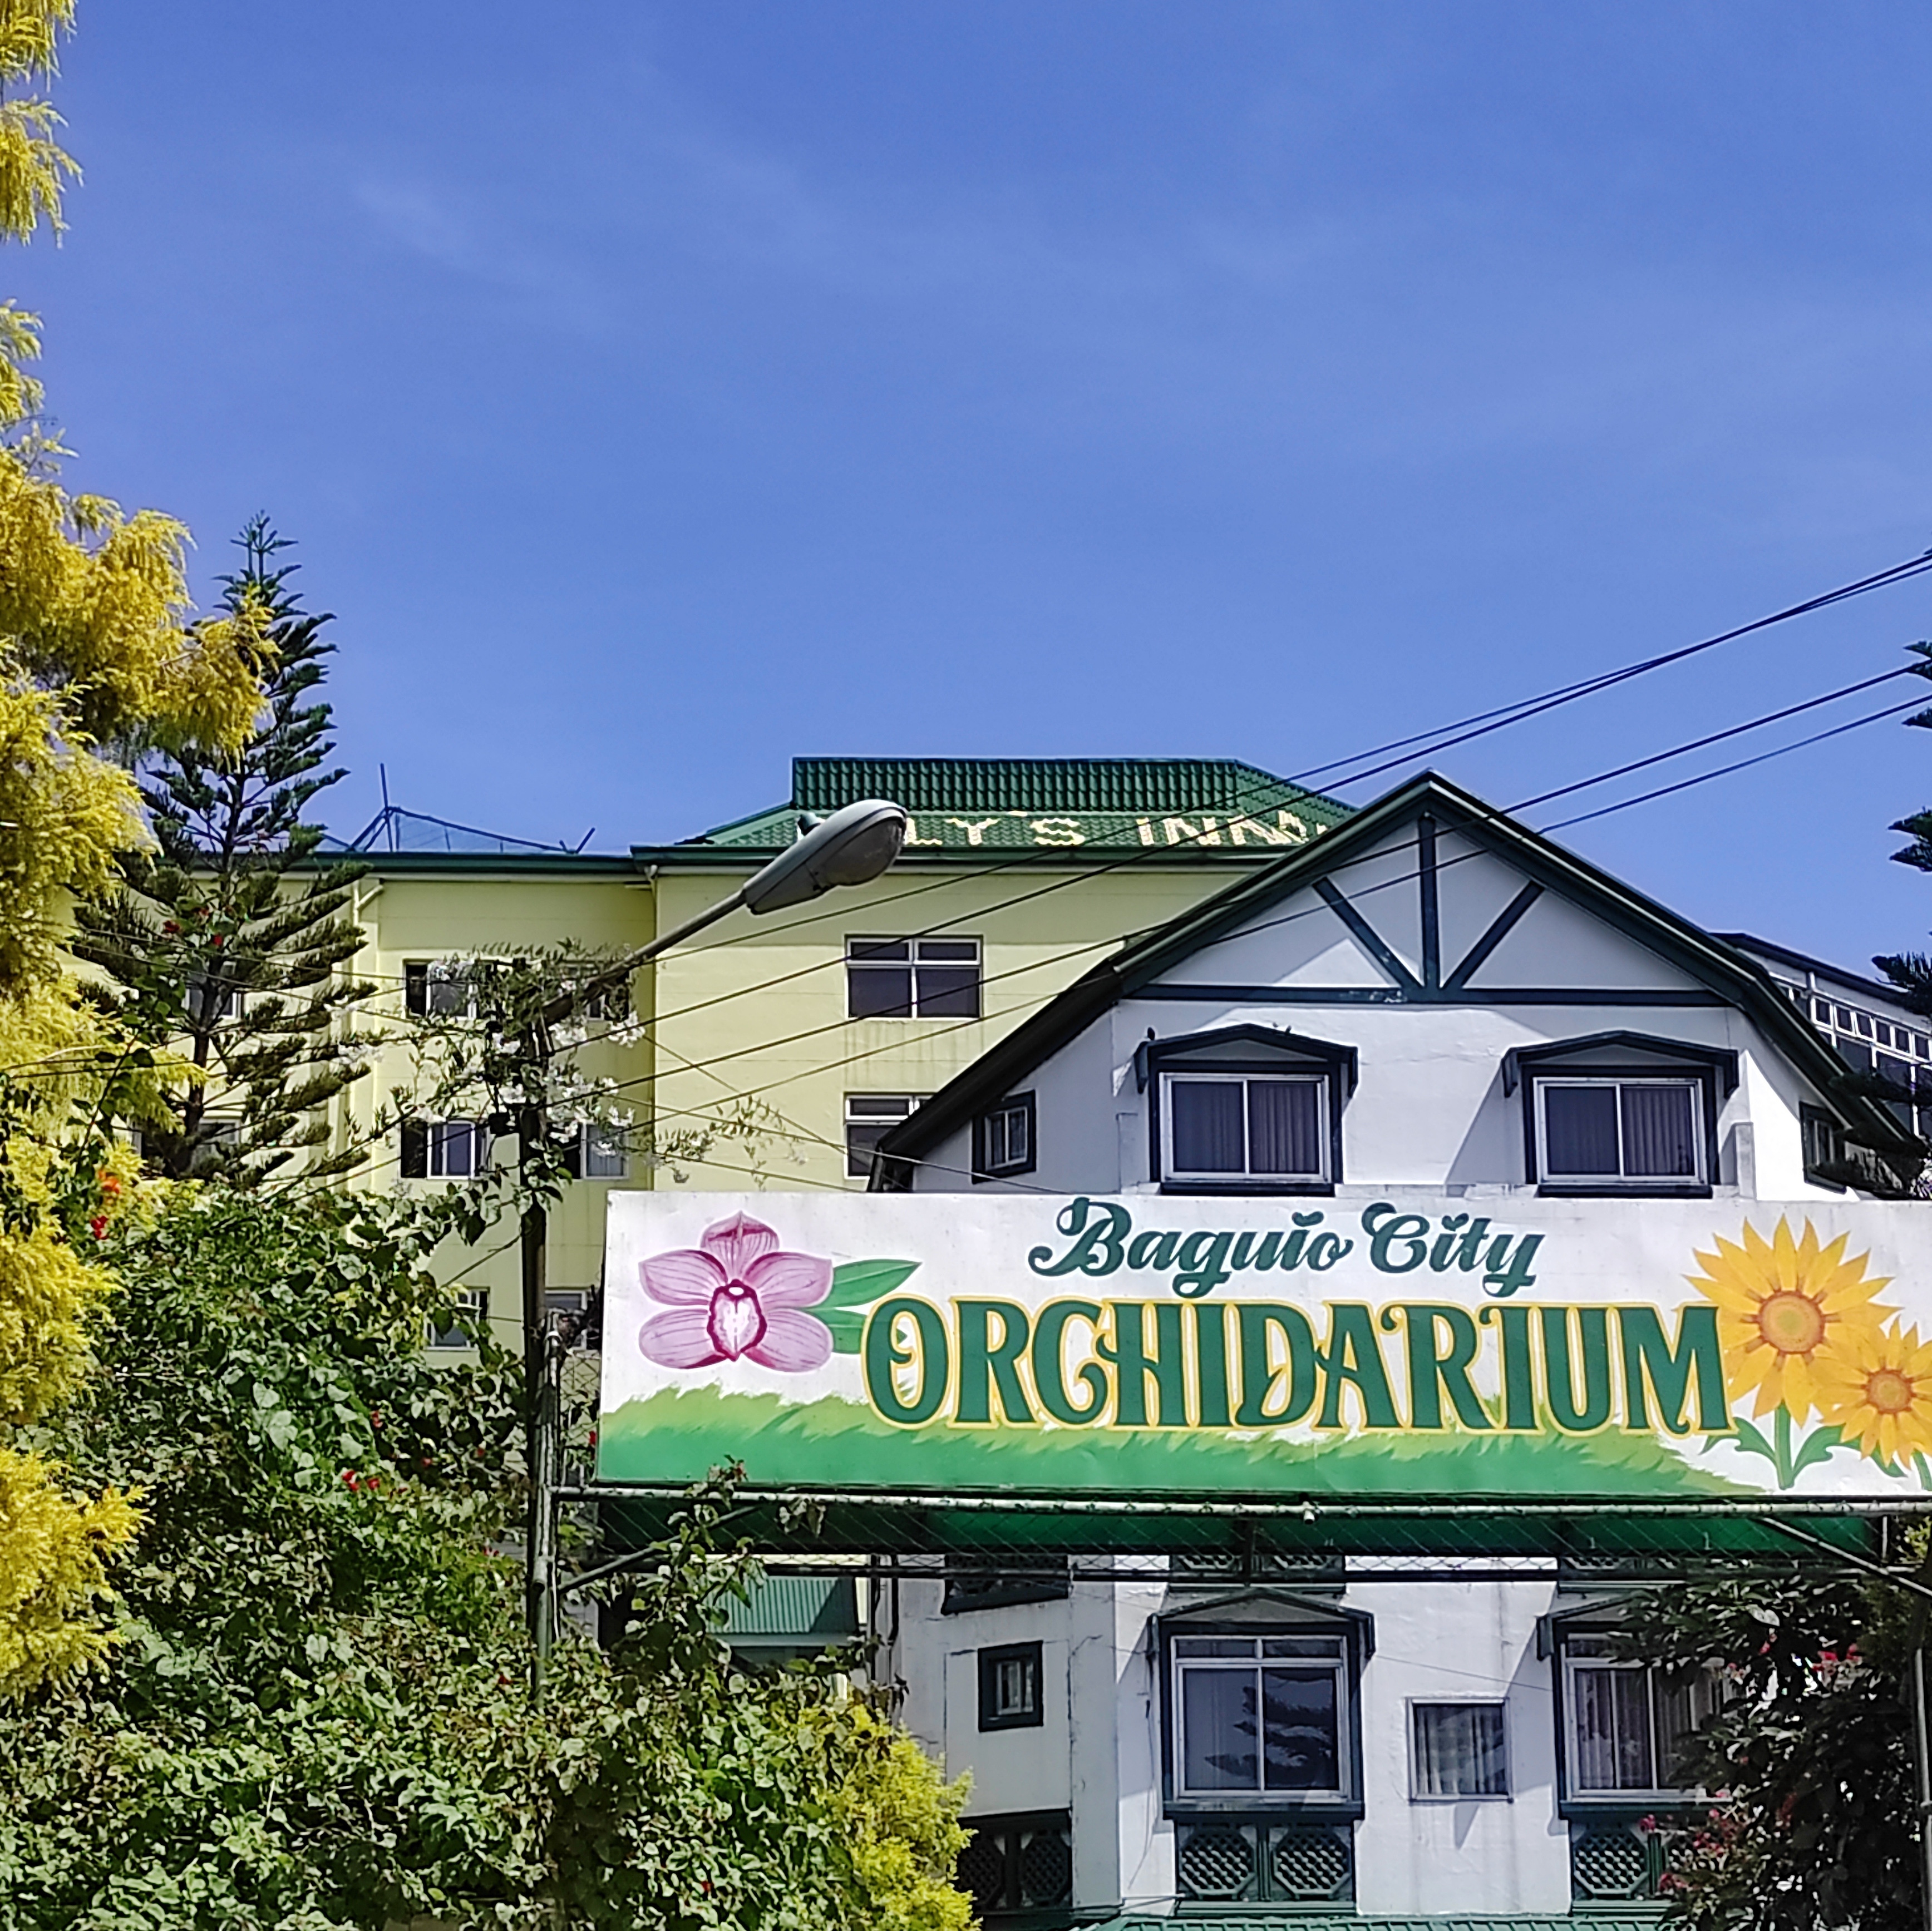 The Orchidarium in Baguio City, Philippines